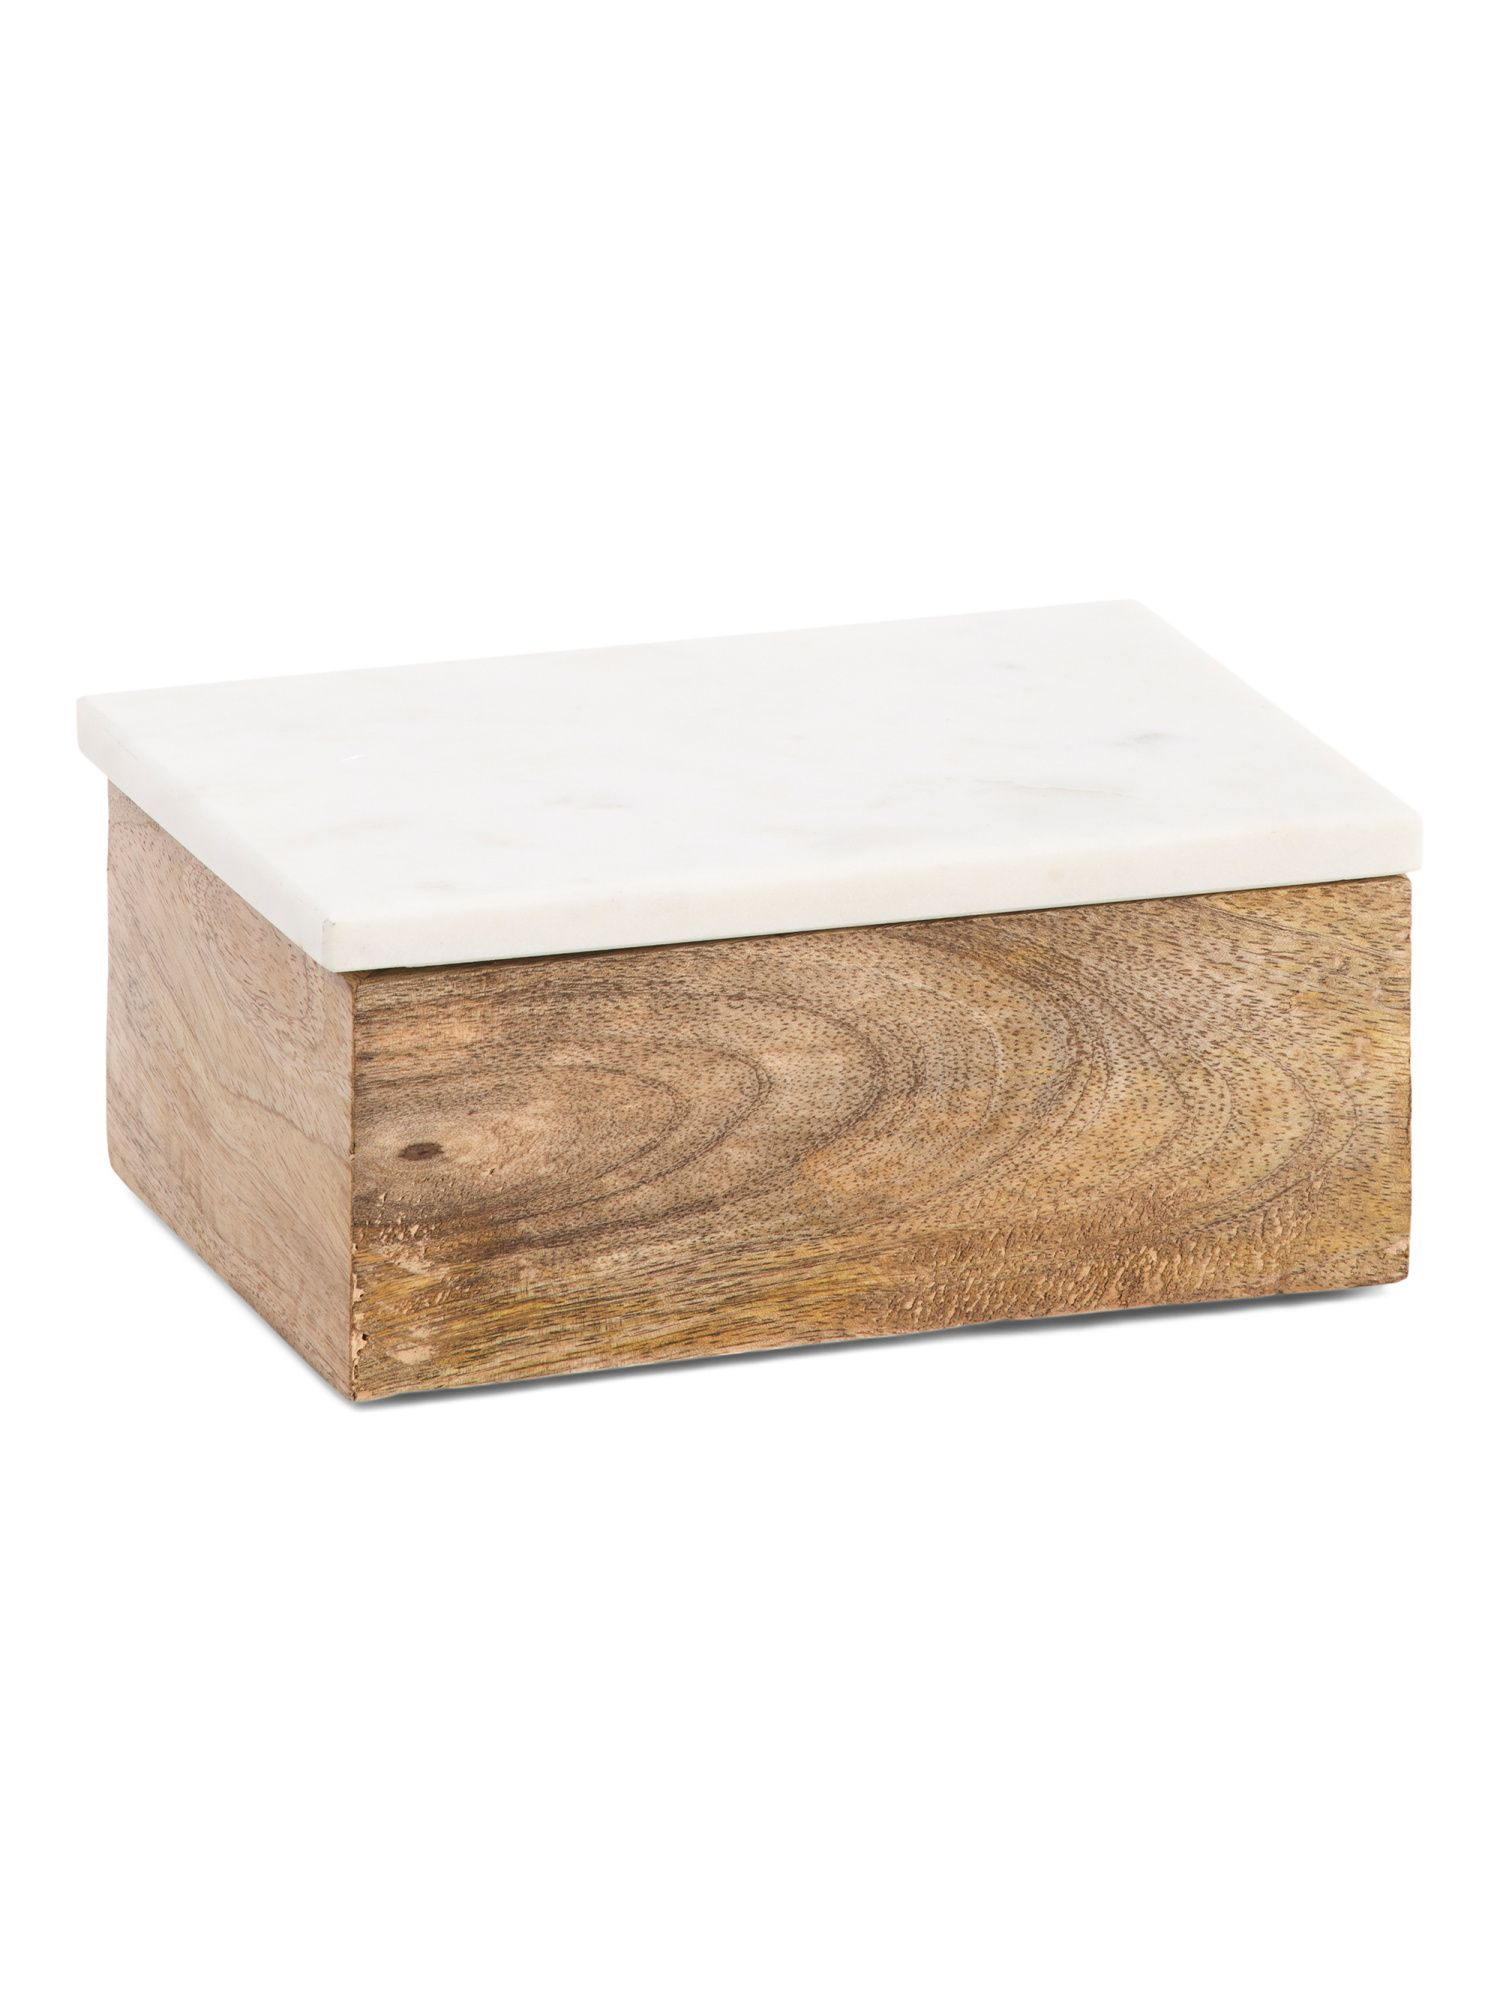 Marble Lid Wood Box | Baskets & Storage | Marshalls | Marshalls